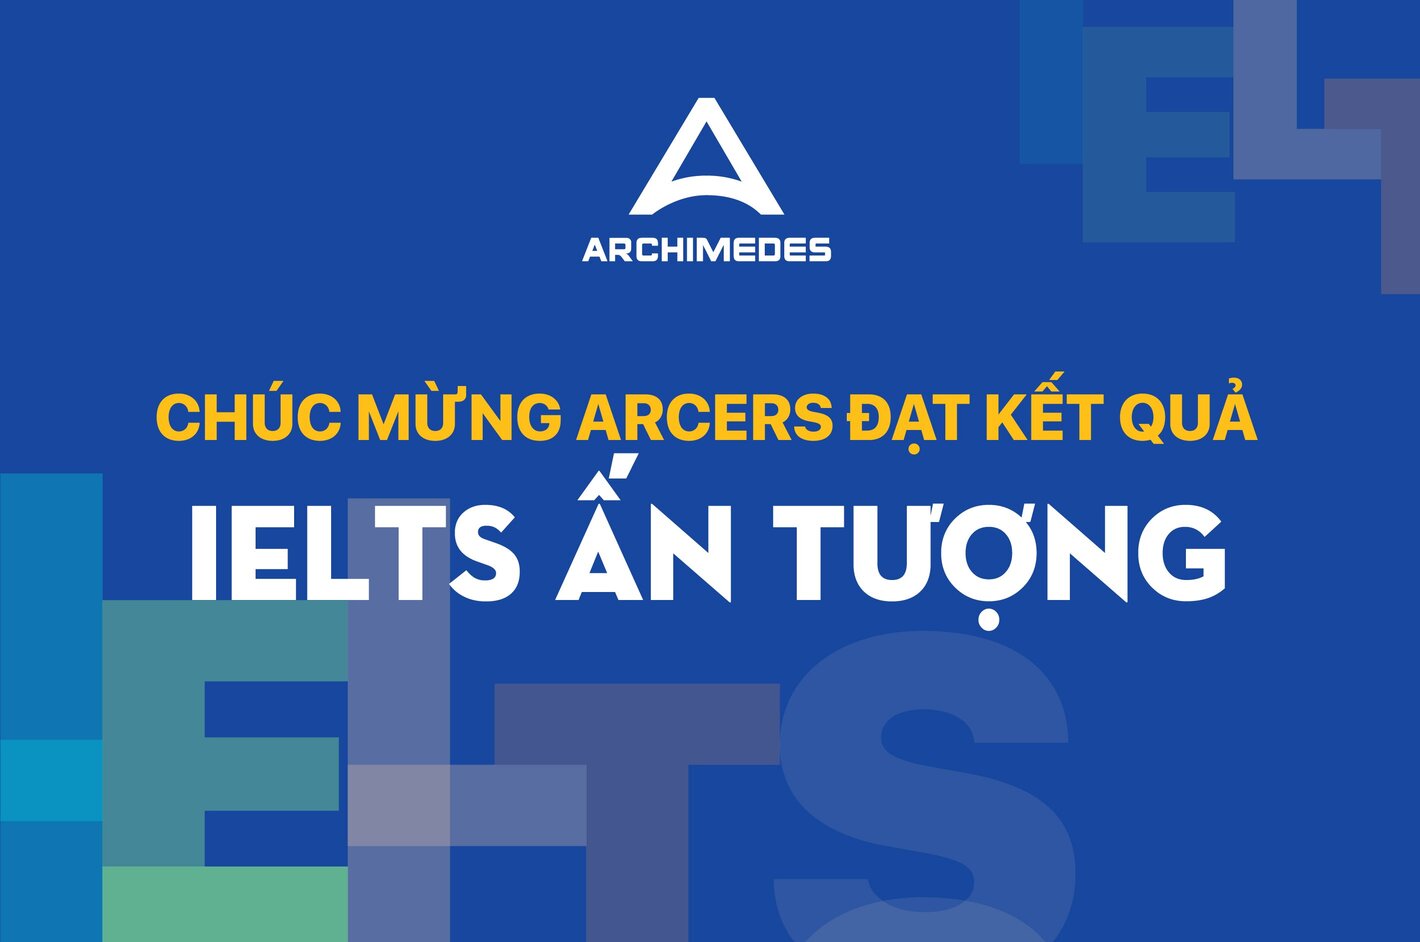 Chúc mừng Acers đạt kết quả đáng tự hào với thành tích IELTS ấn tượng